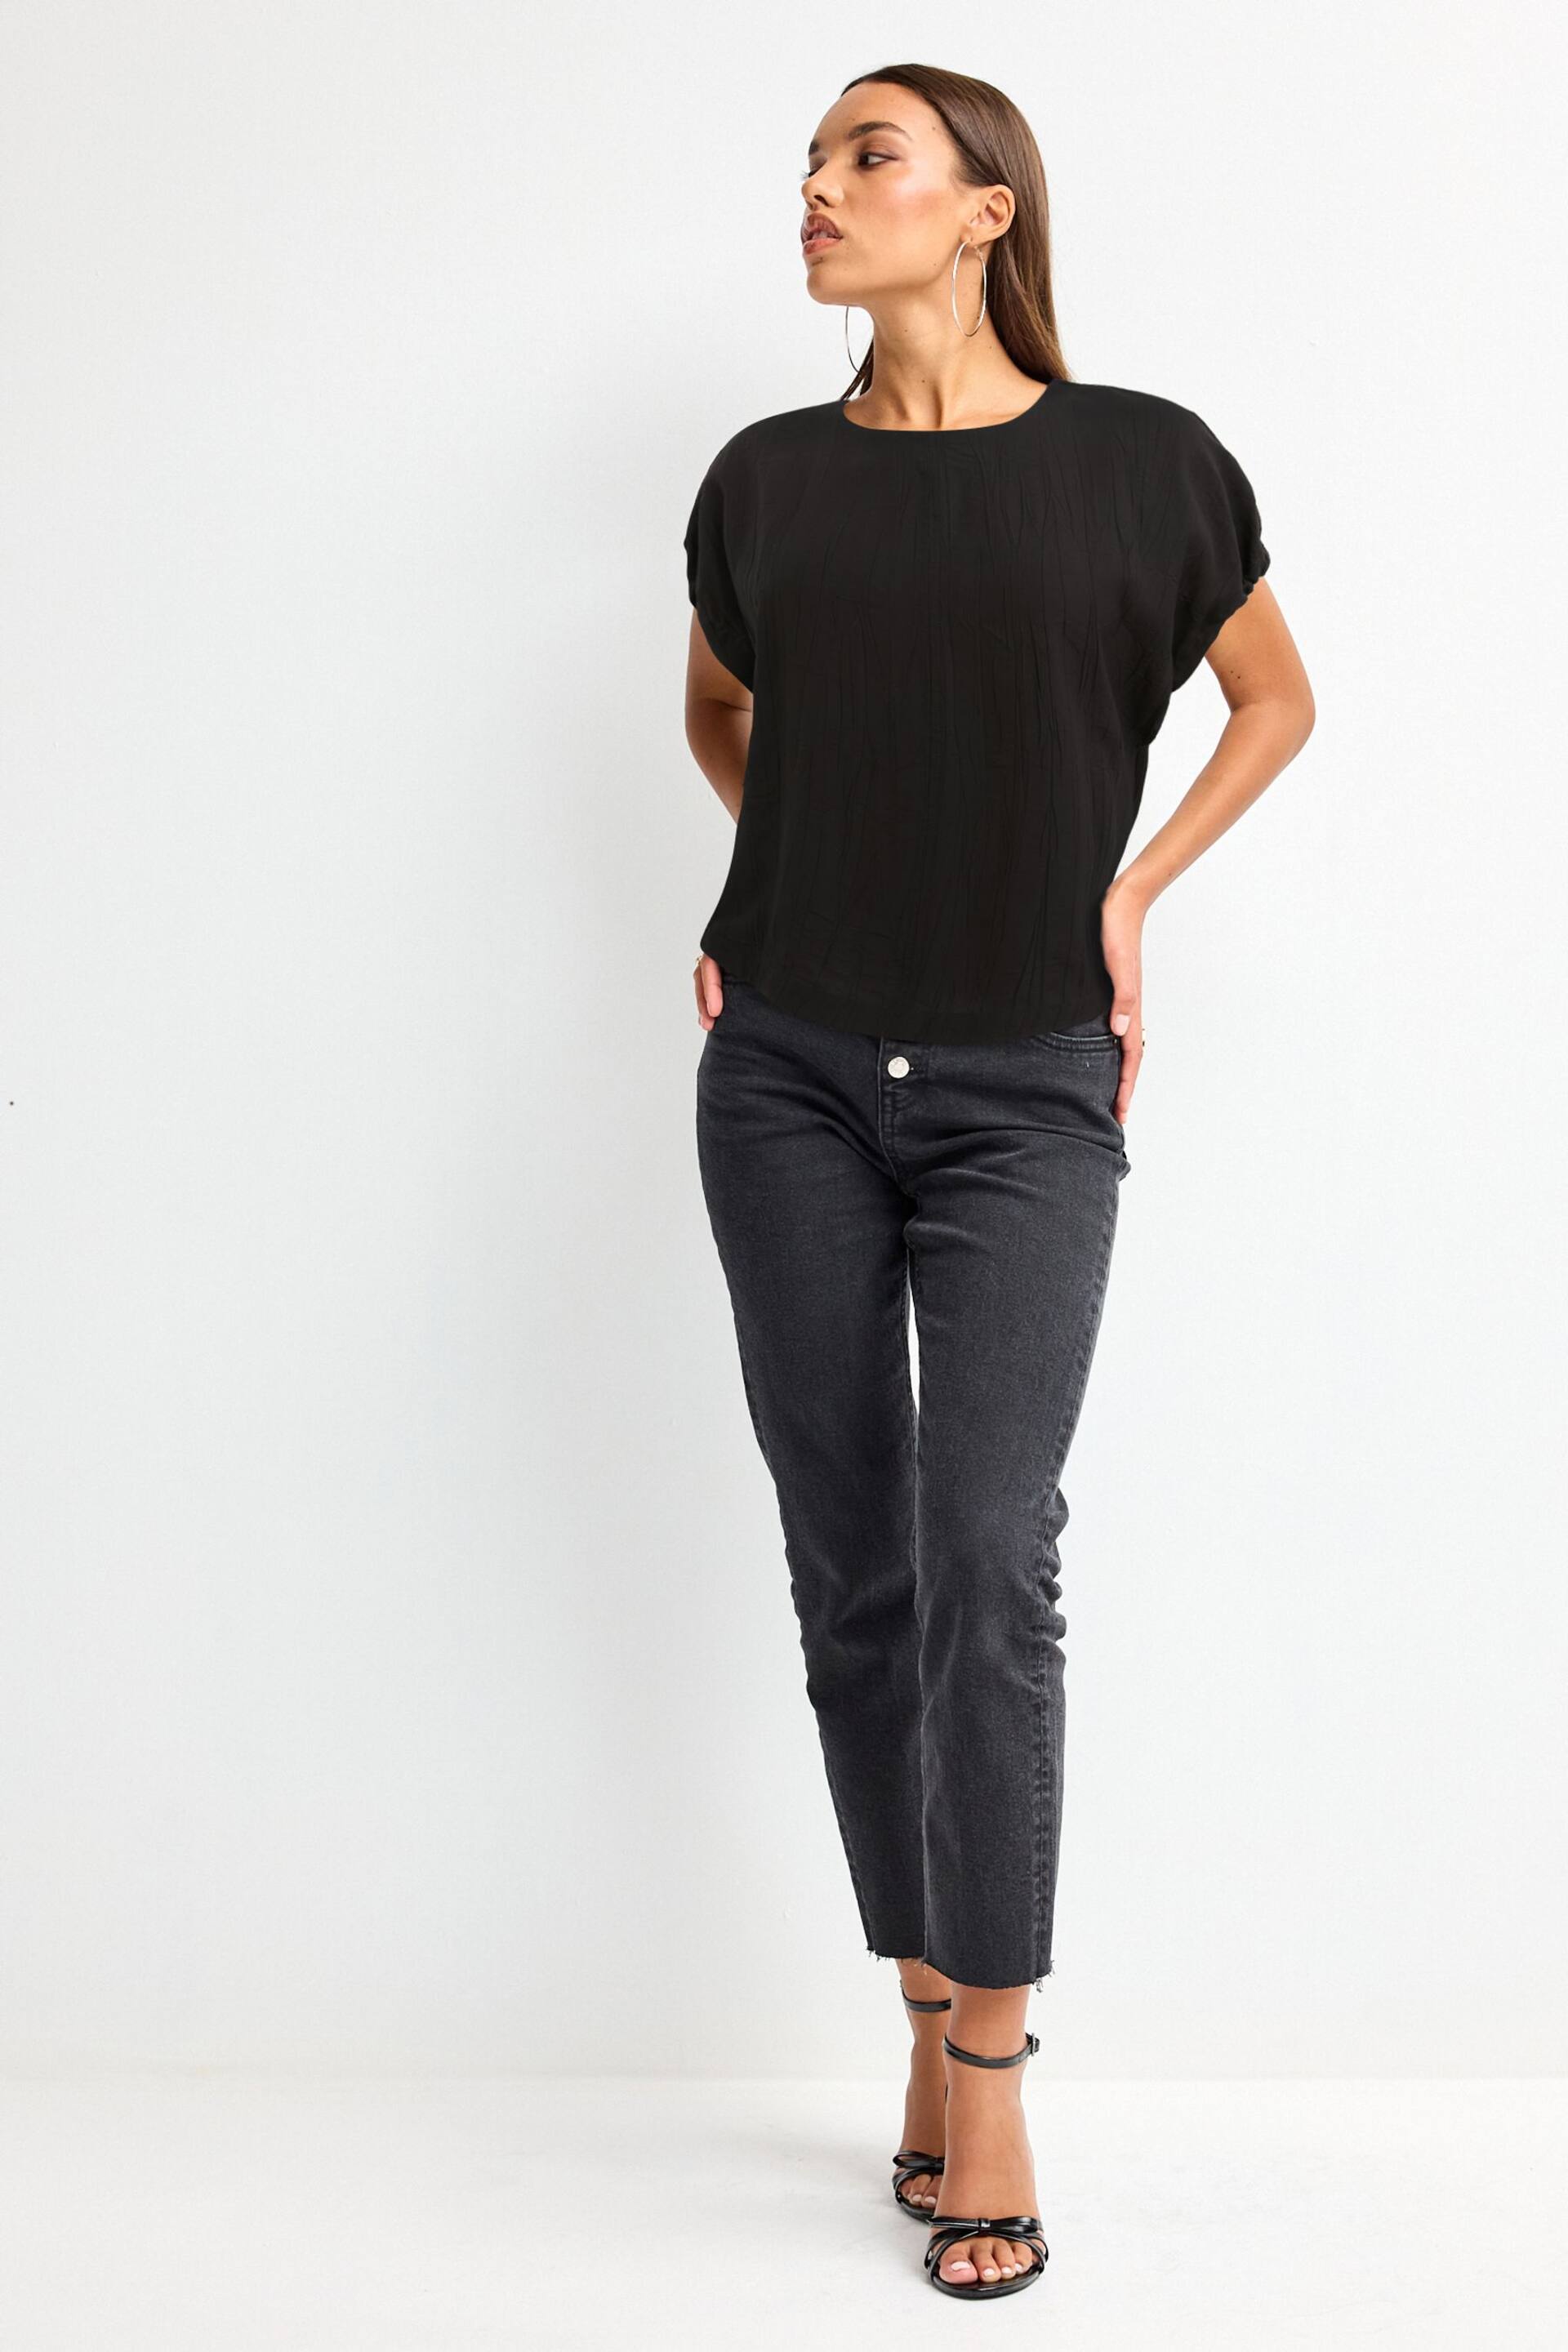 Black Gathered Short Sleeve Textured Boxy T-Shirt - Image 2 of 6